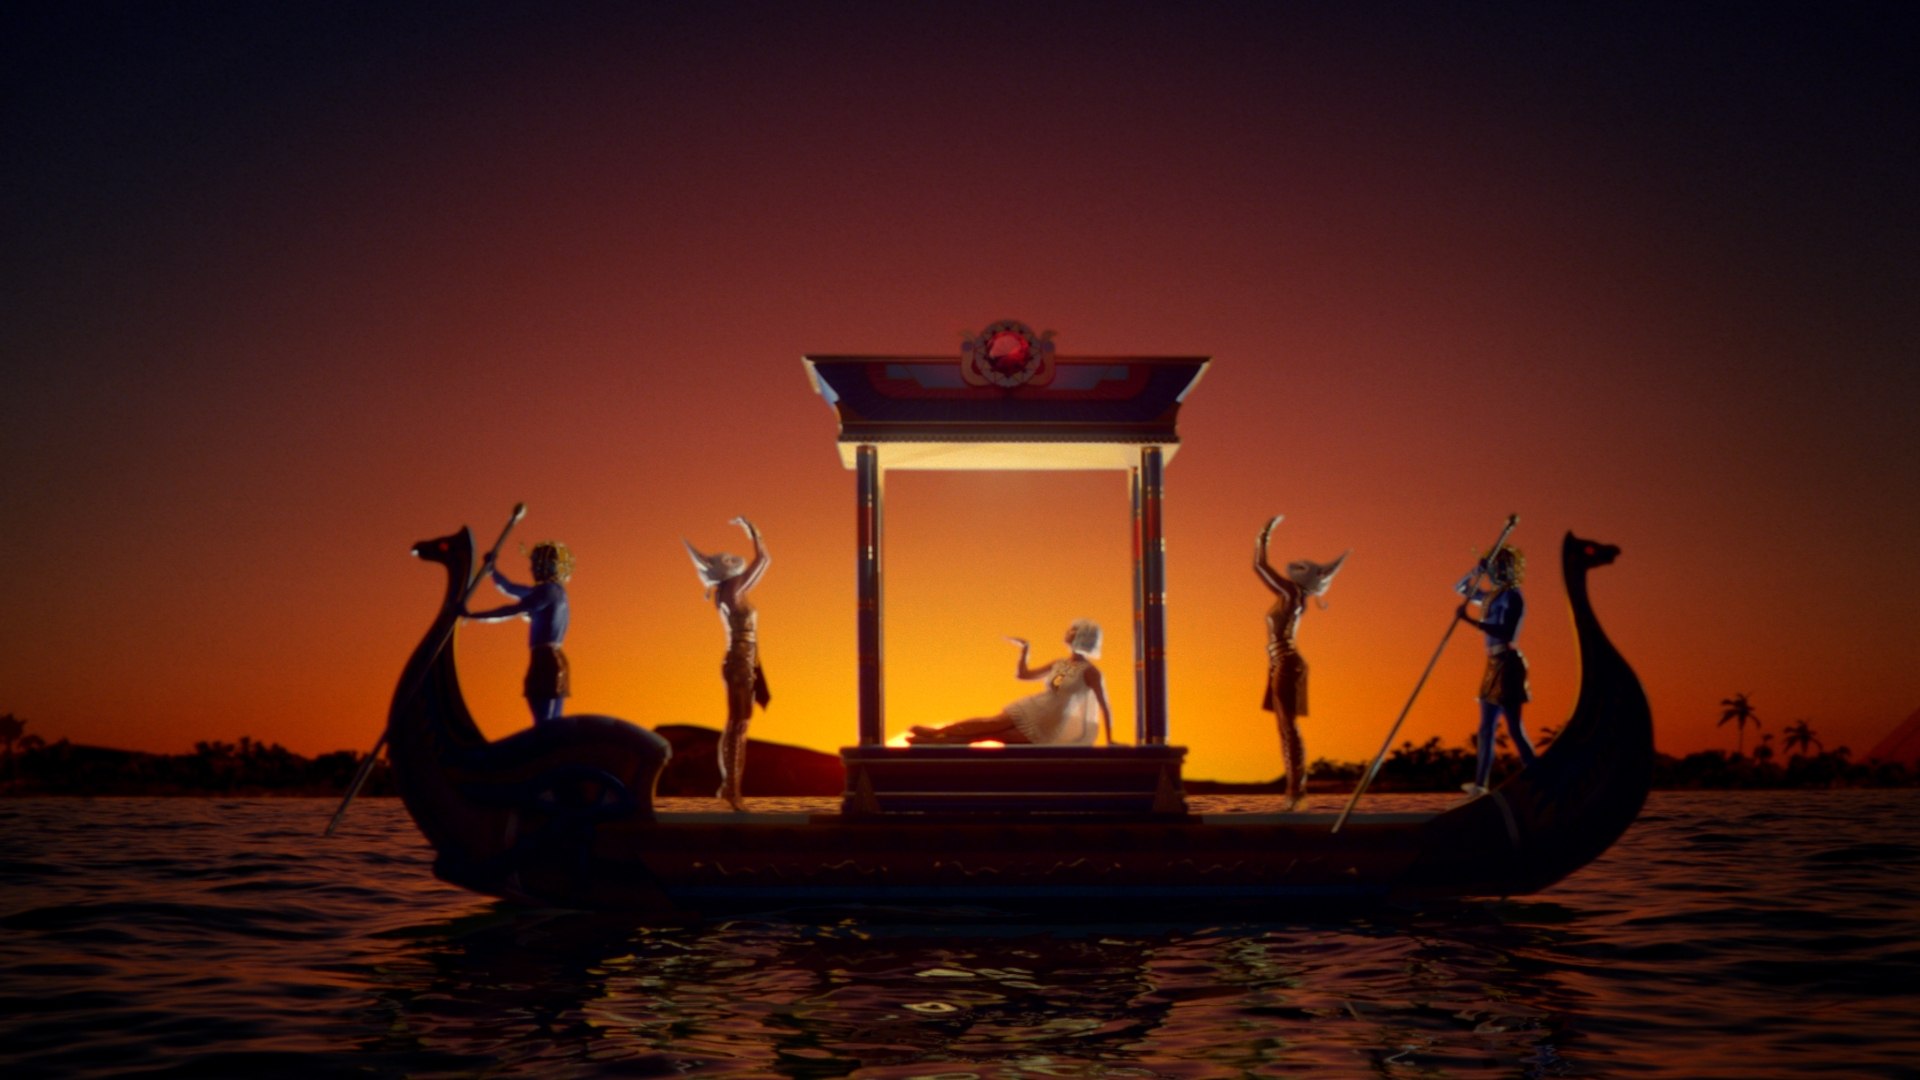 Mirada Creates 'Dark Horse' World for Katy Perry. Animation World Network